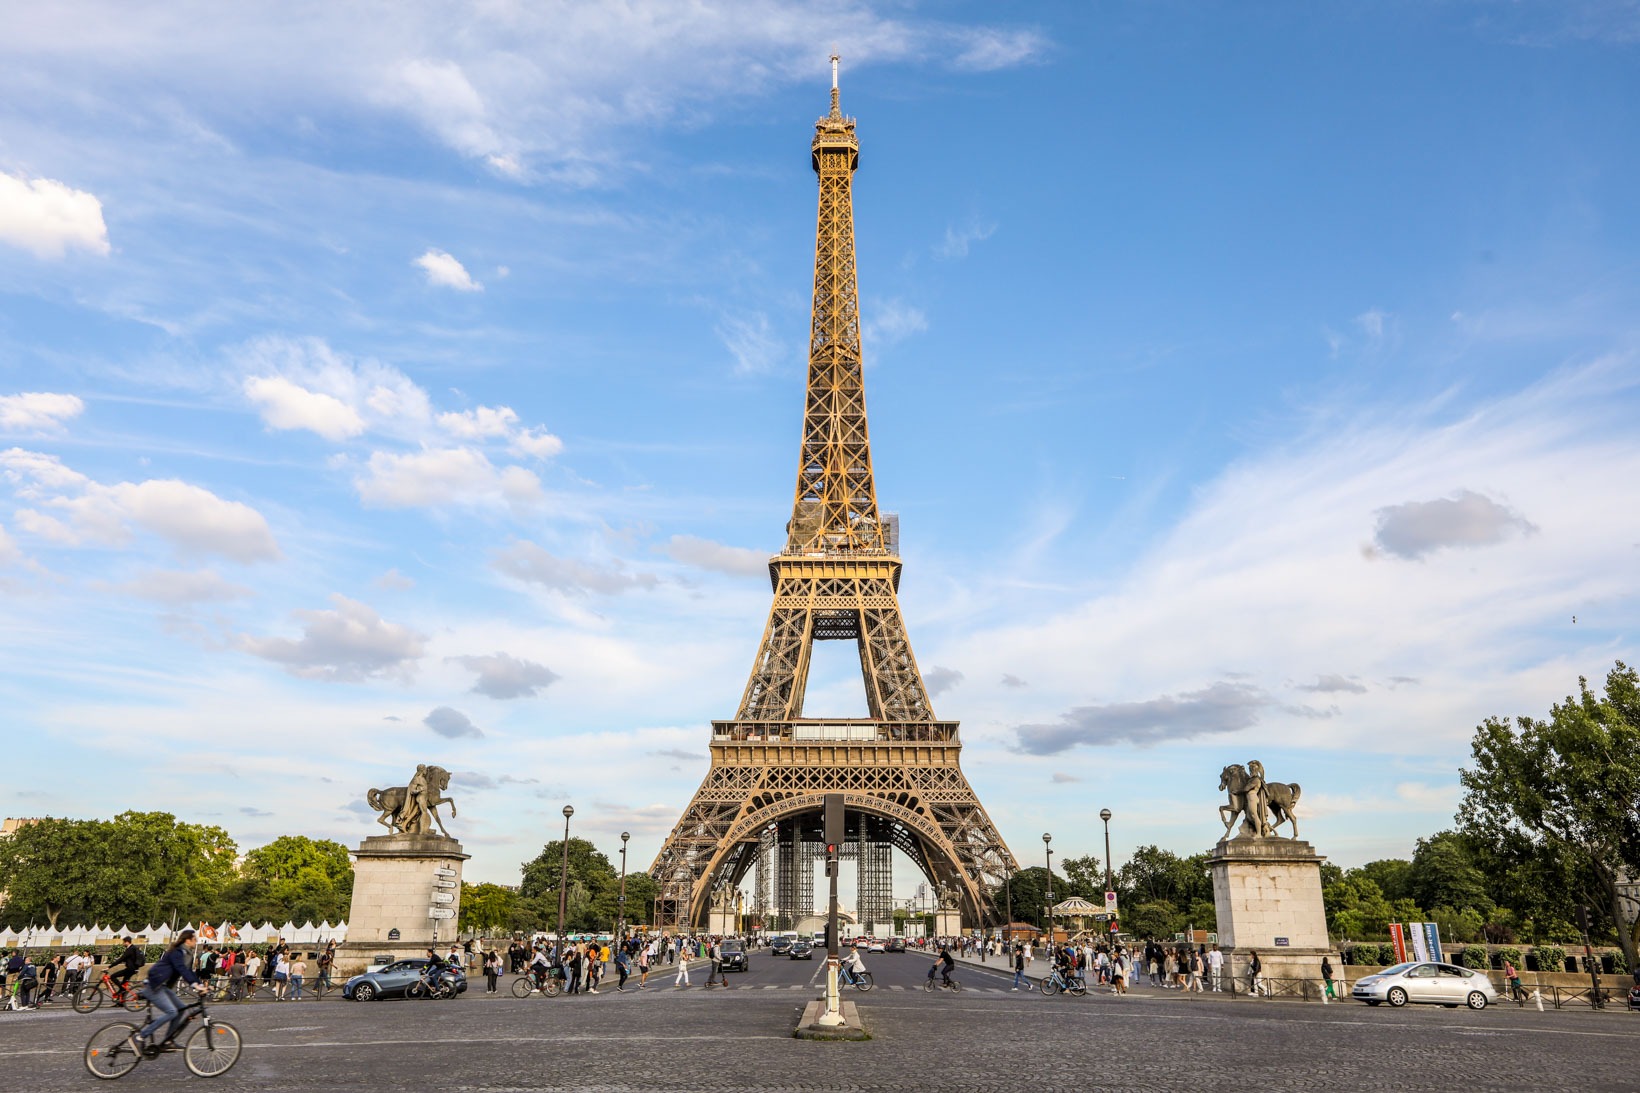 Melhor lugar para fotografar a Torre Eiffel